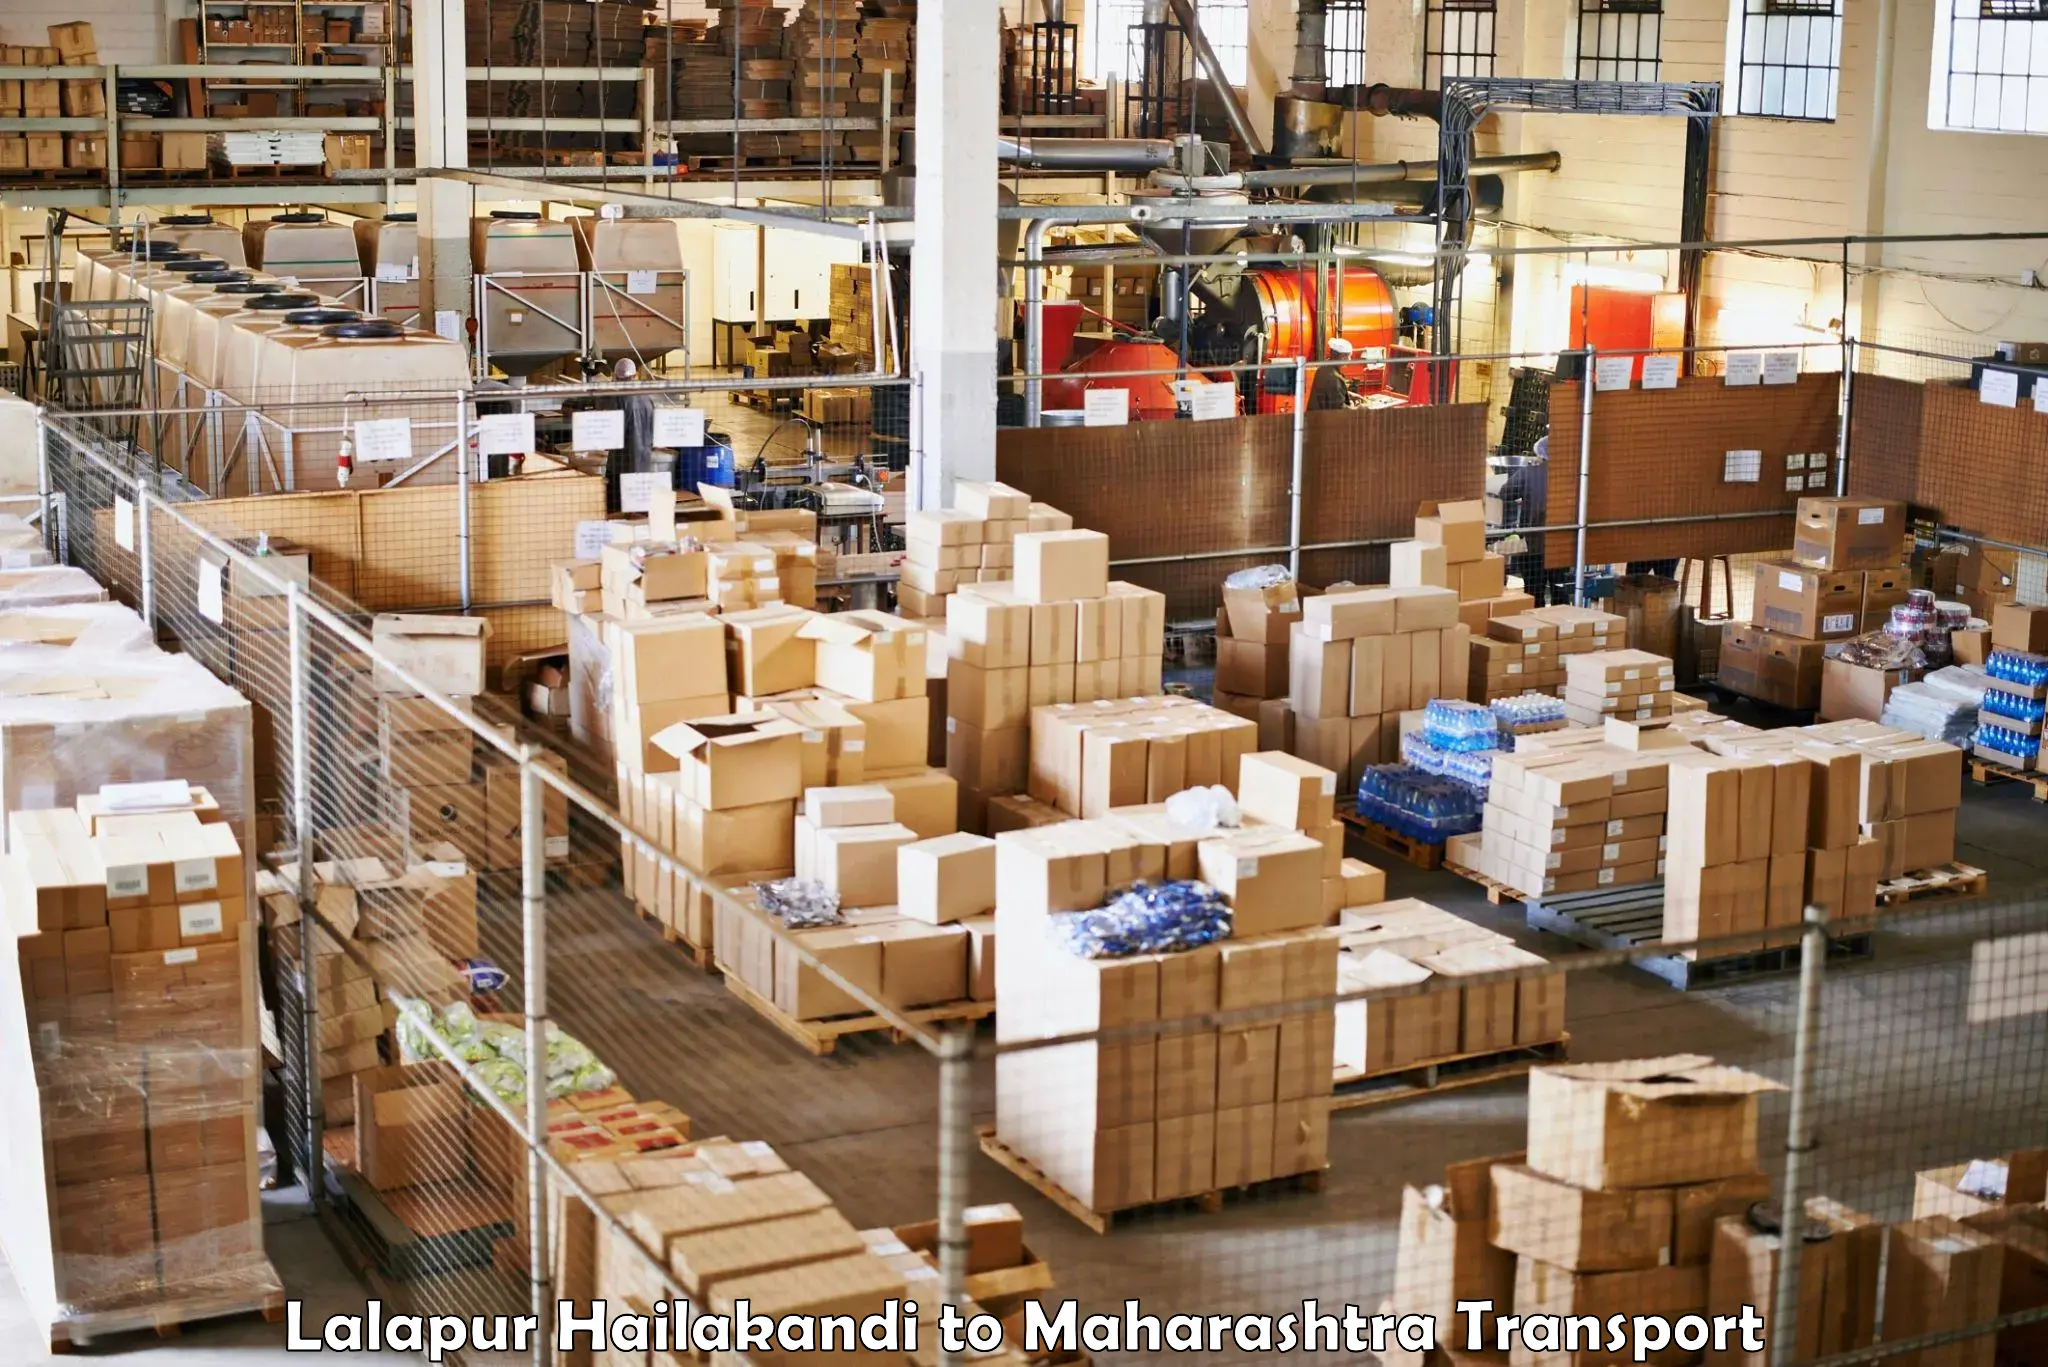 Luggage transport services Lalapur Hailakandi to Maharashtra